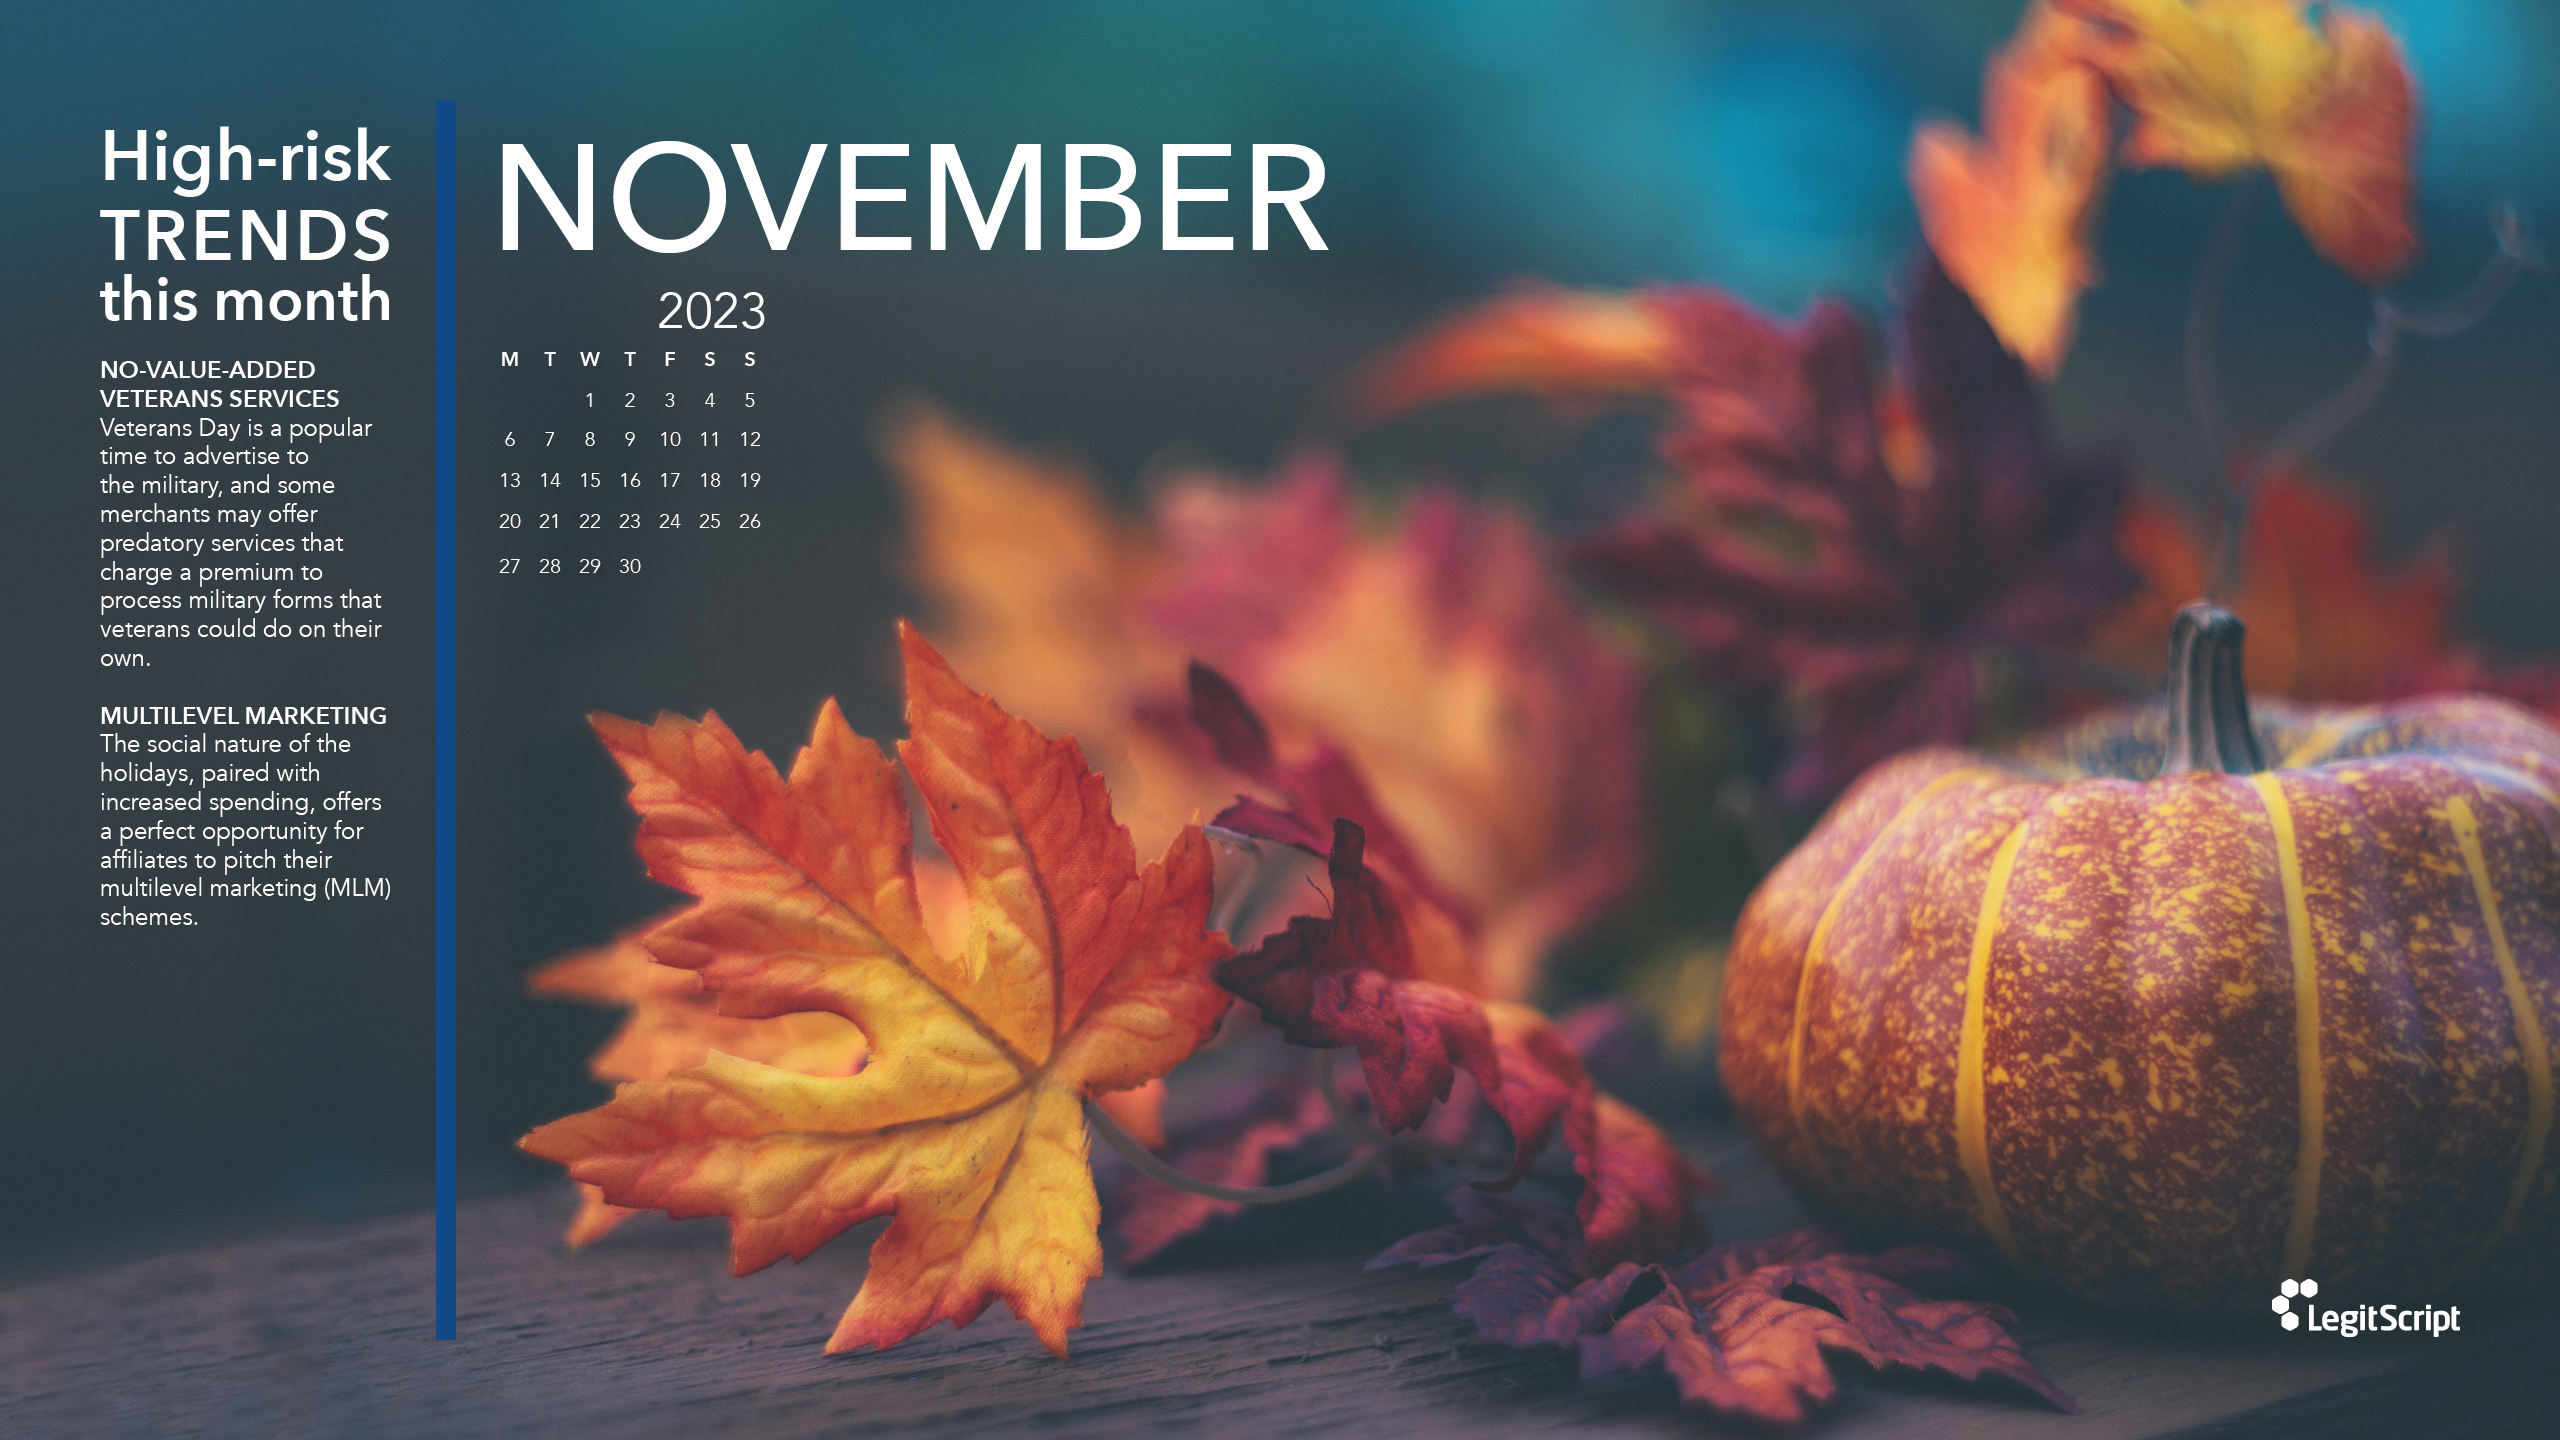 Seasonal High Risk Trends desktop background for November.